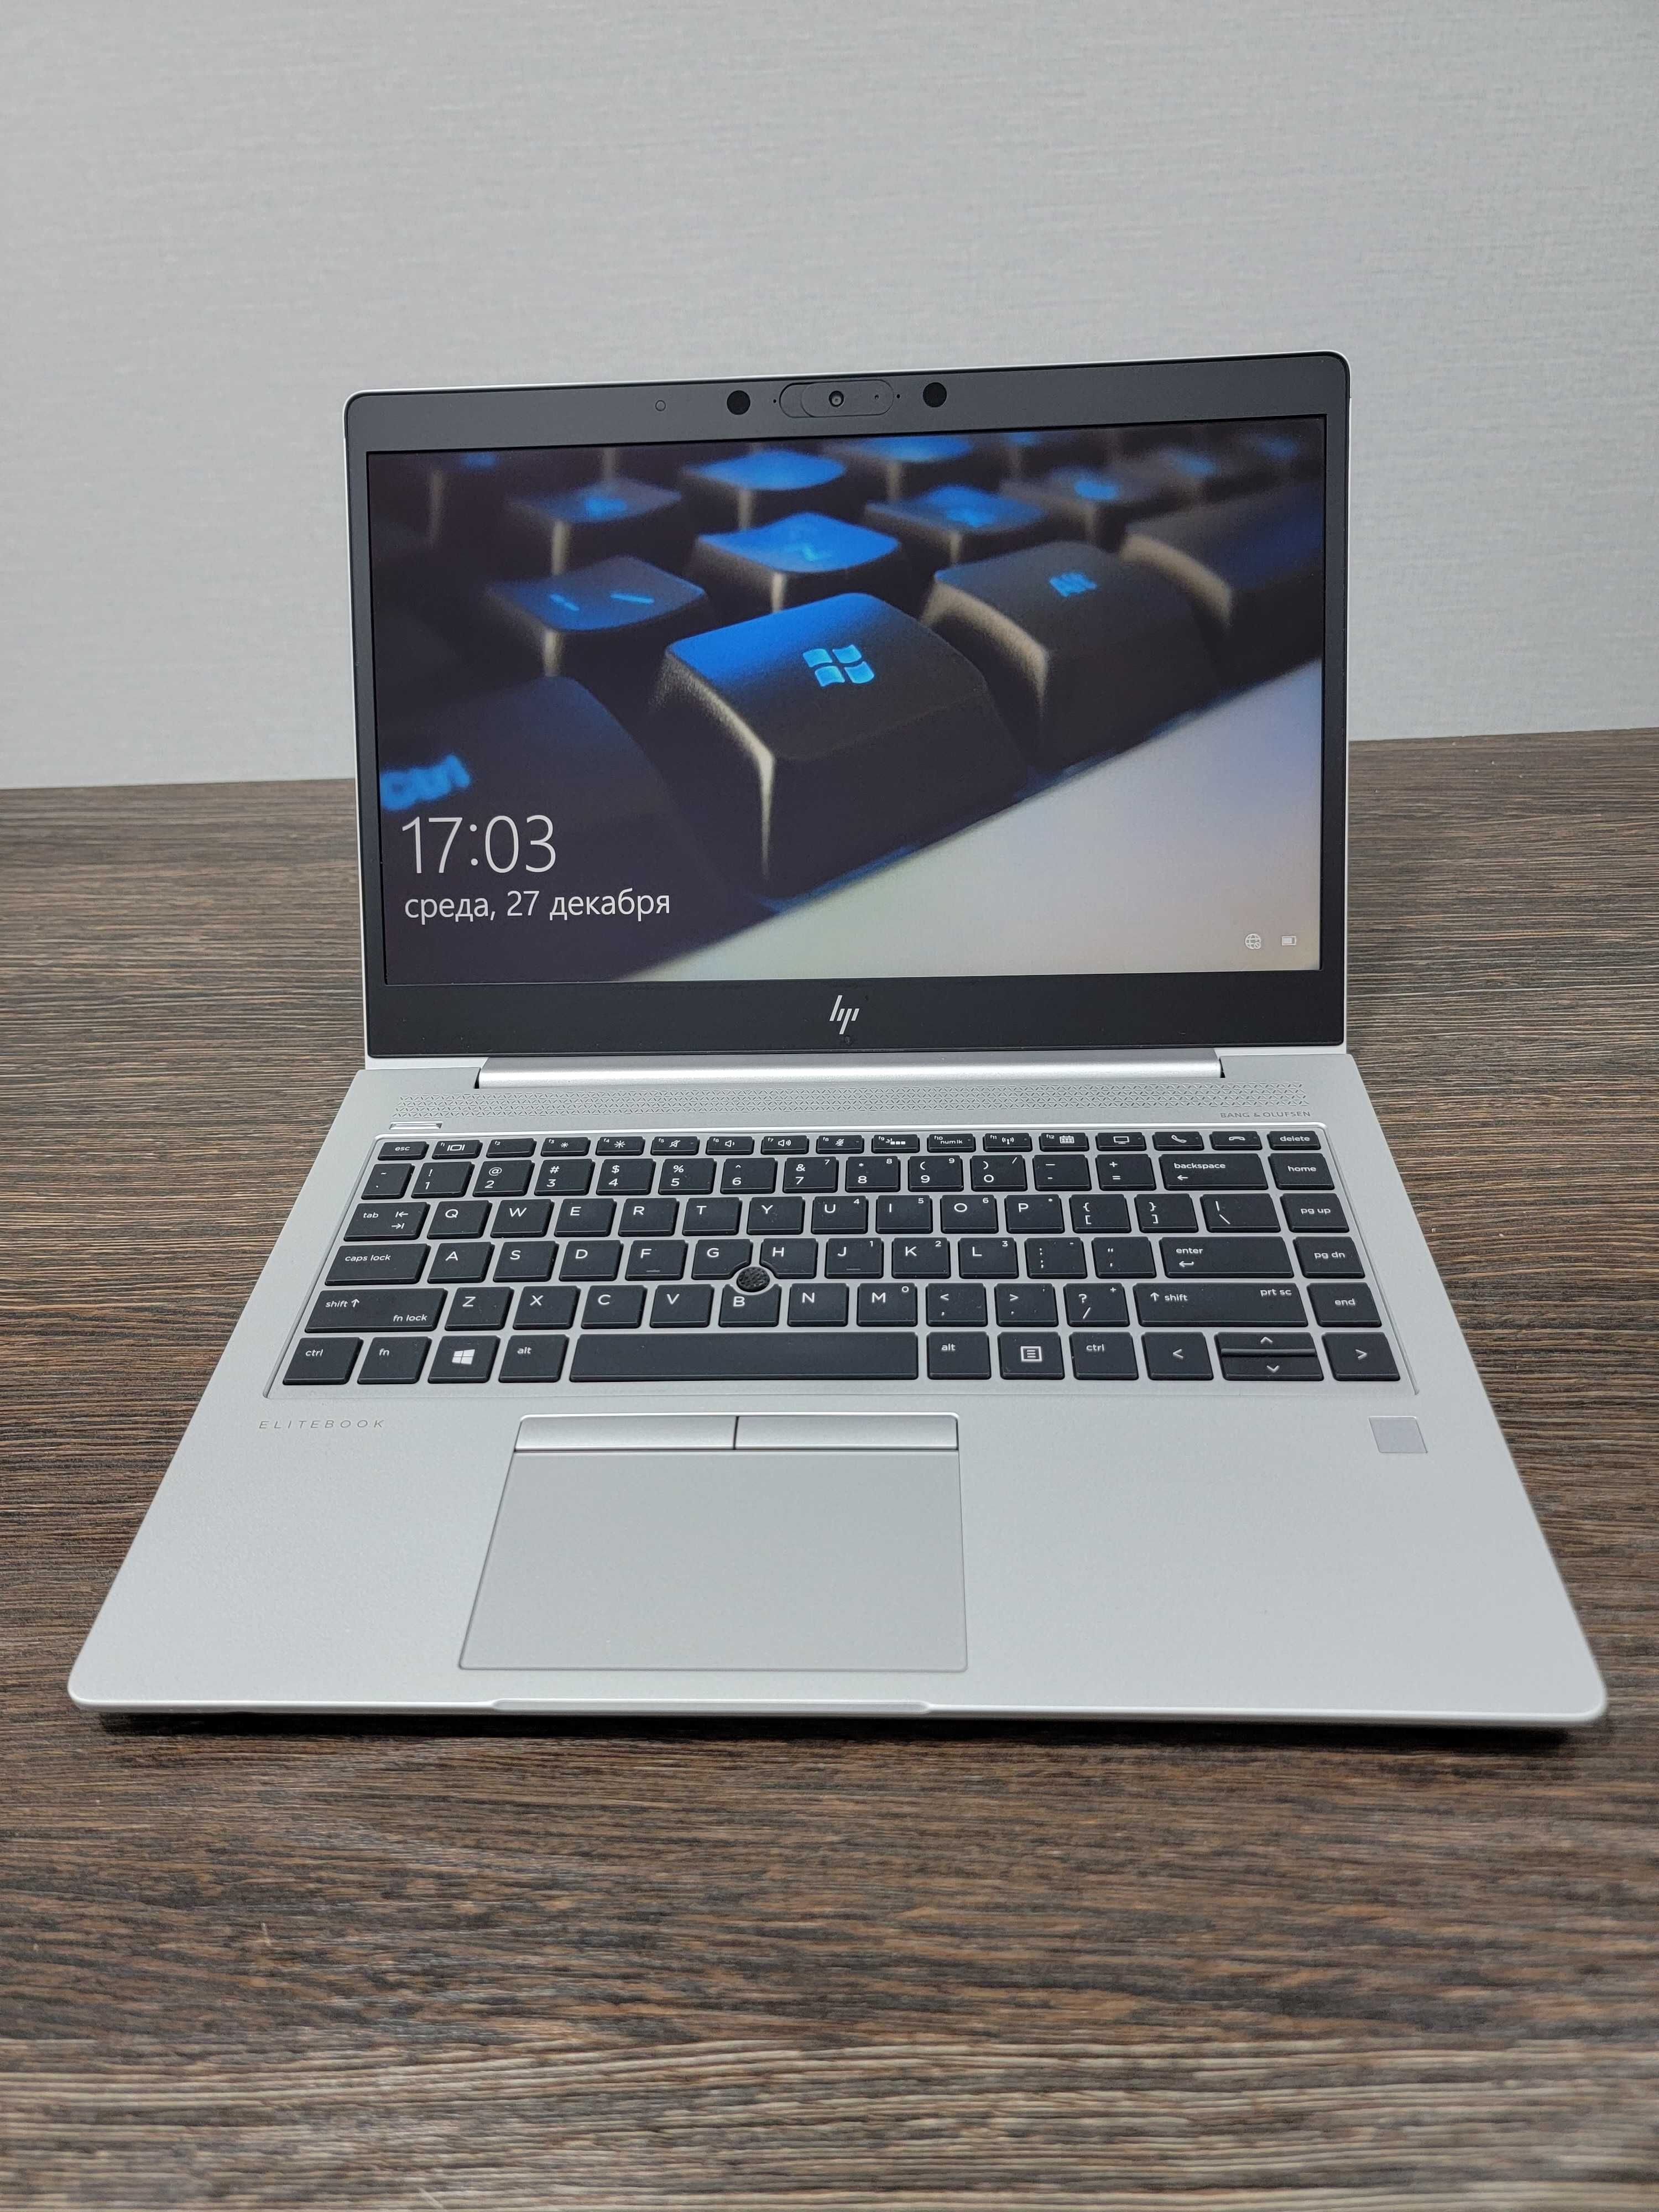 мощный ультонкий ноутбук Hp EliteBook 745 G6, подсветка клавиатуры,